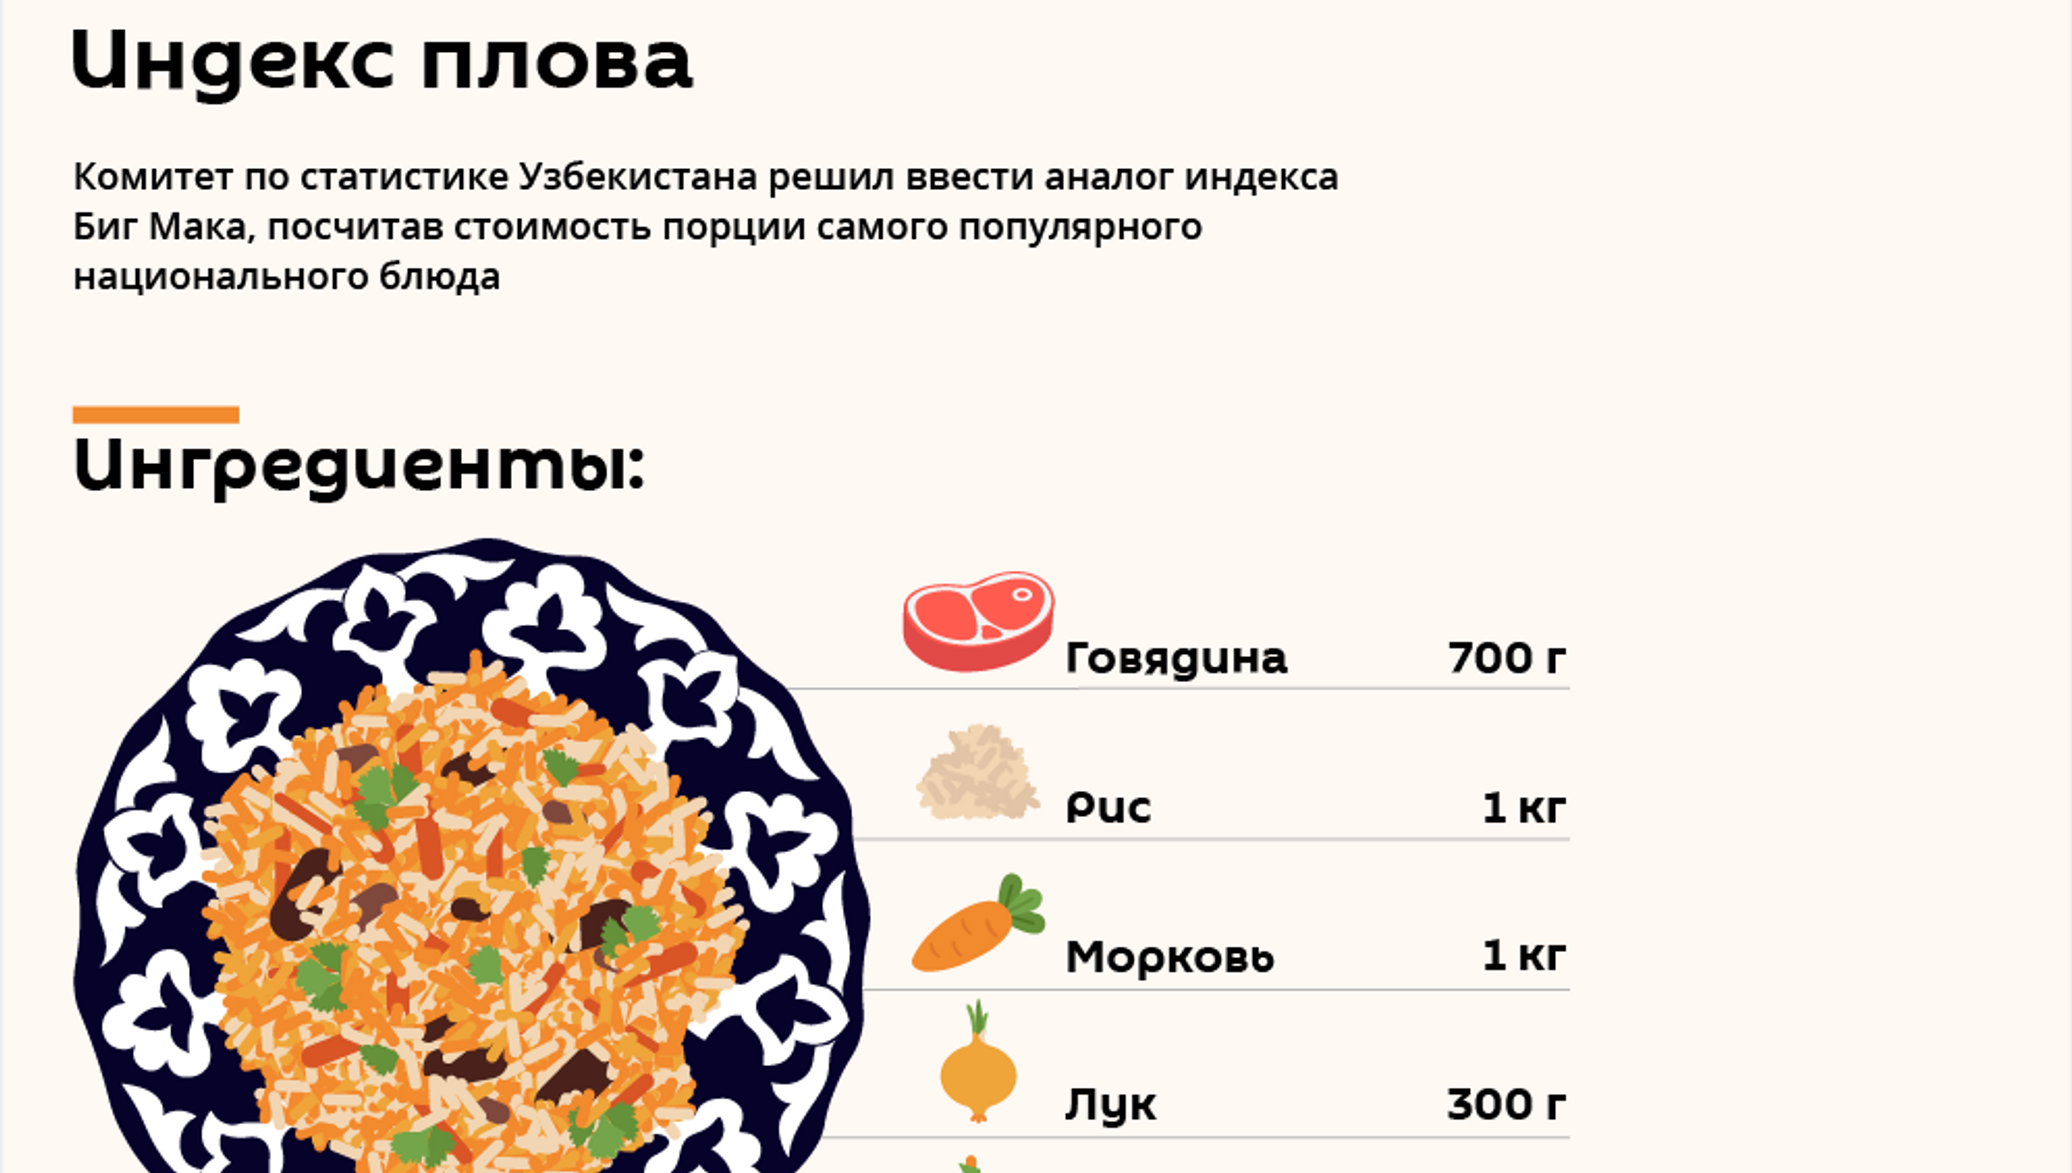 Плов на 1 кг мяса. Себестоимость 1 кг плова. Индекс плова в Узбекистане. Плов порция в граммах. Порция плова на 1 человека.